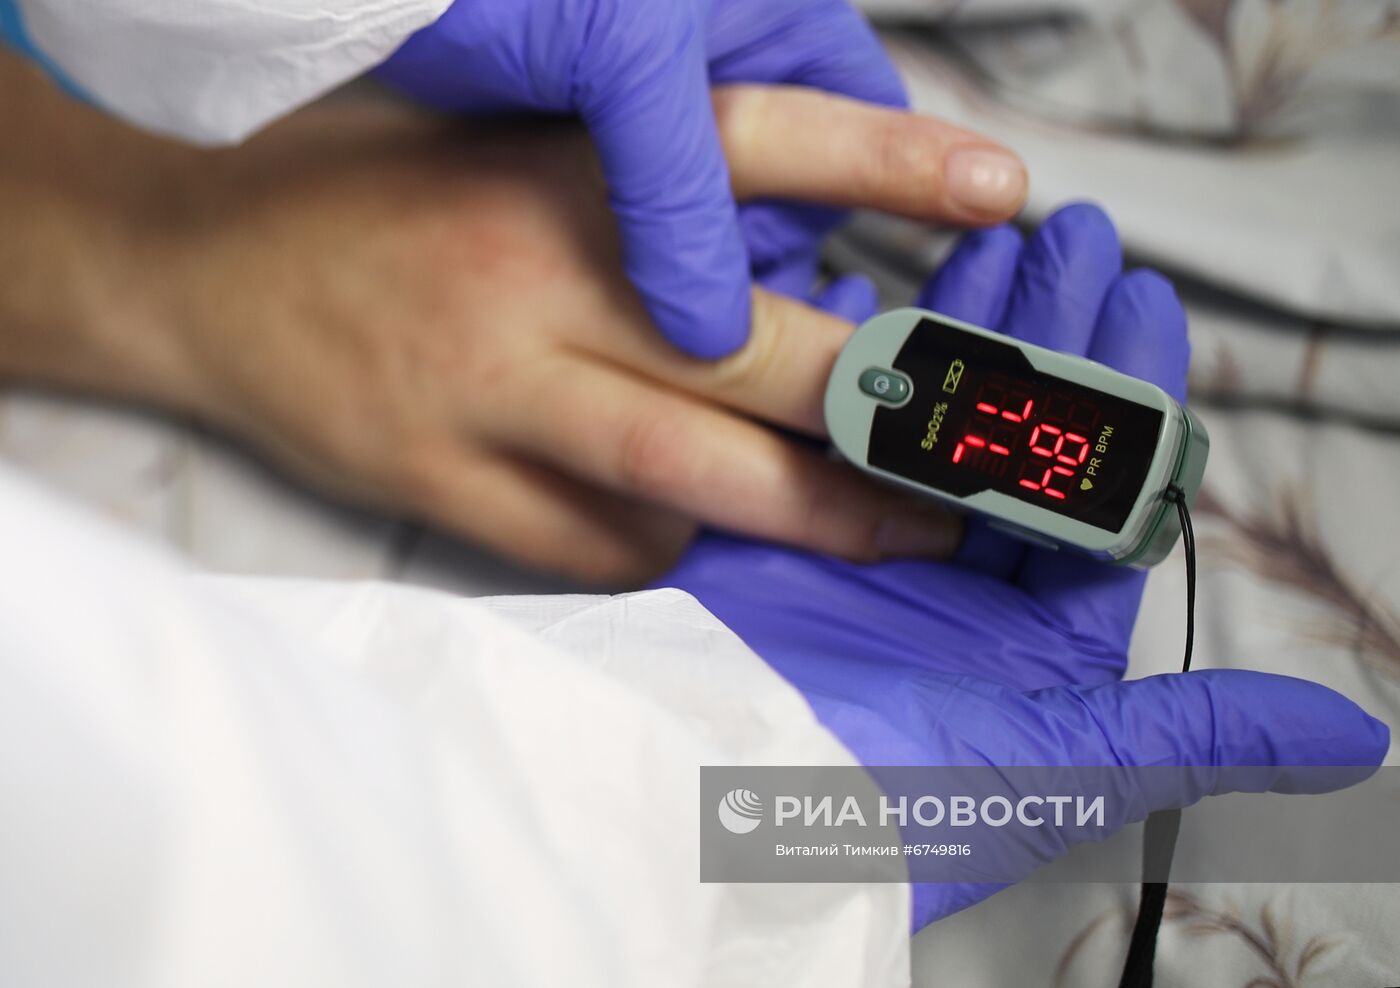 Лечение пациентов с Covid-19 в краевой больнице Краснодара